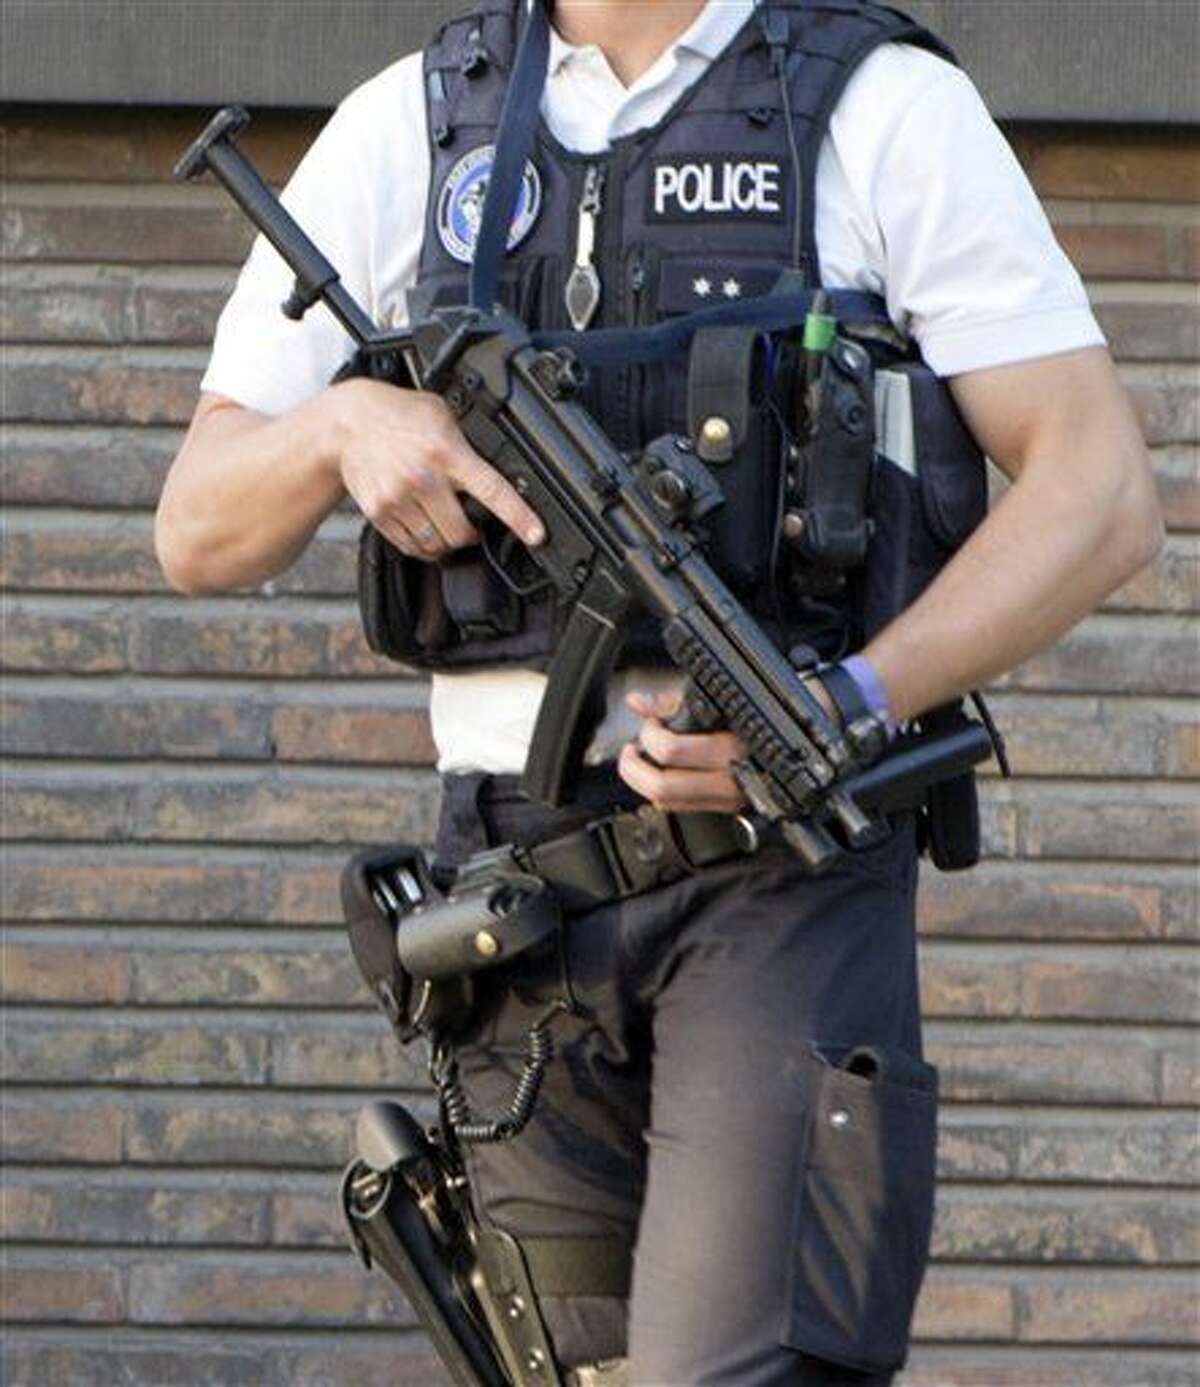 Un agente de la policía belga patrulla por las inmediaciones de una comisaría en Charleroi, Bélgica, el 6 de agosto de 2016. Un hombre atacó a dos agentes con un arma cerca de una comisaría el 6 de agosto antes de ser detenido. (AP Foto/Virginia Mayo)